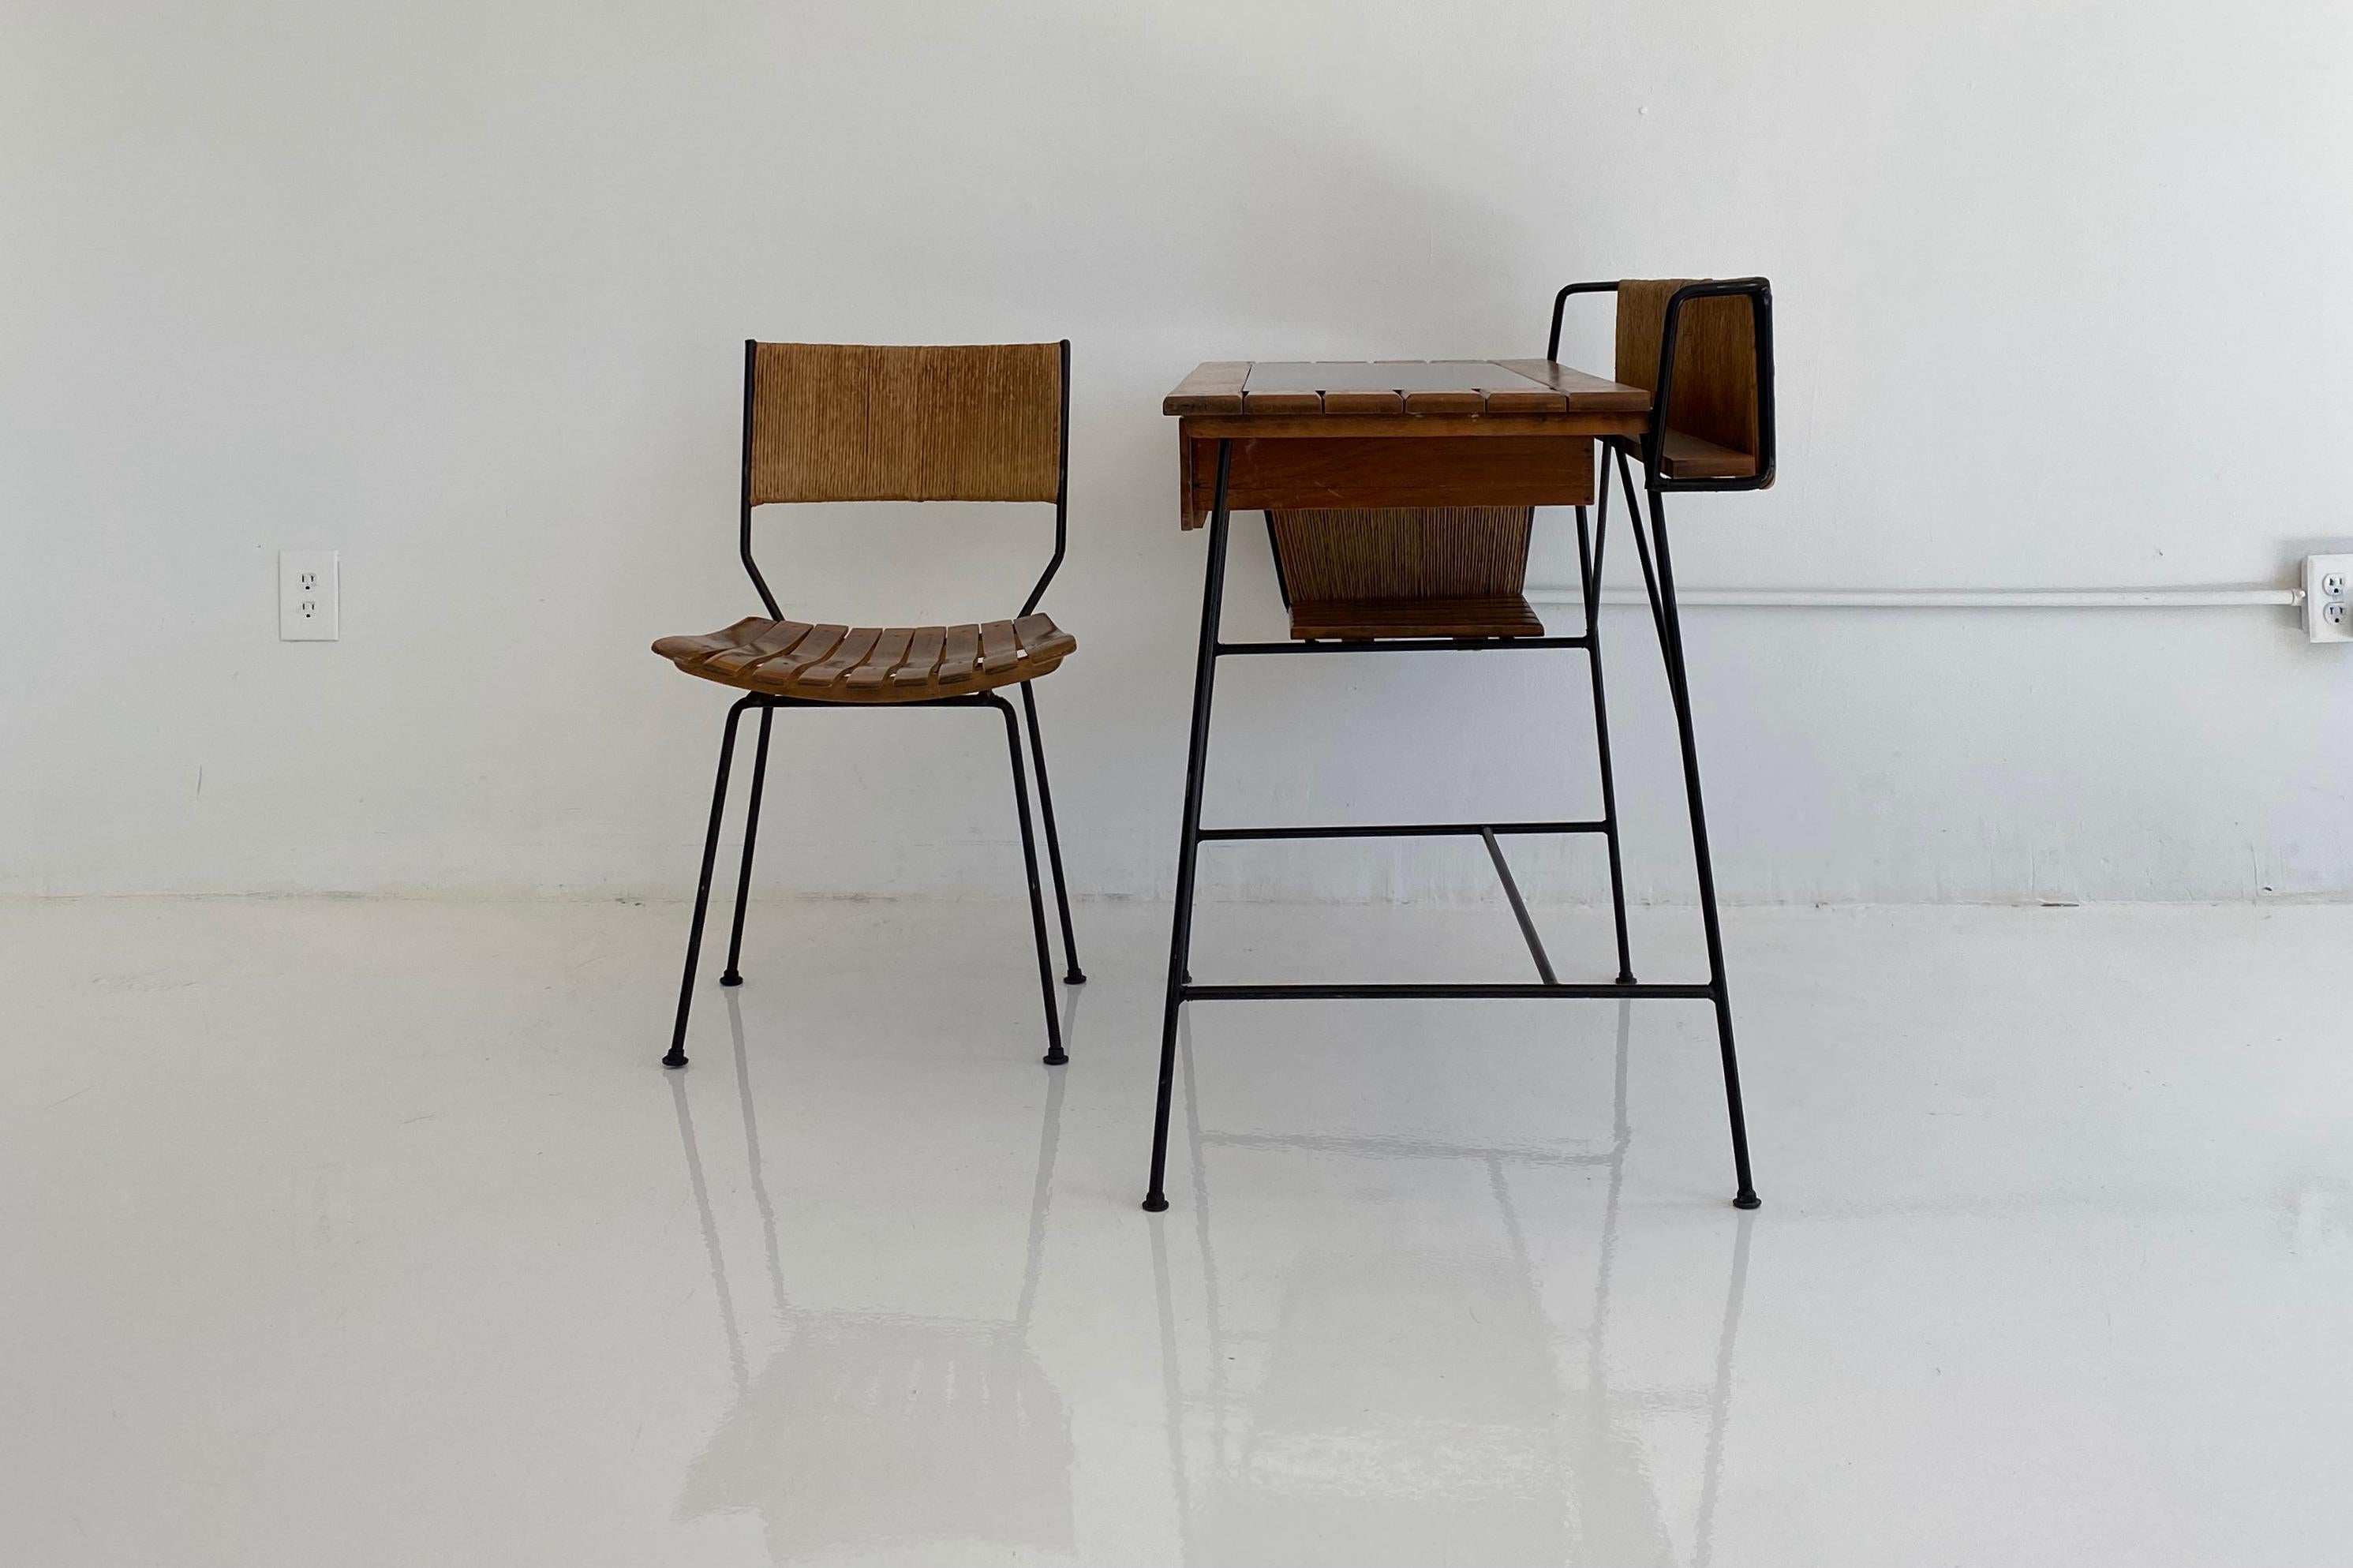 Schreibtisch und Stuhl von Arthur Umanoff. Äußerst elegantes und zeitloses Design mit einem Eisenrahmen, Latten aus Walnussholz und Akzenten aus Binsen, die ihm den klassischen Umanoff-Look verleihen. Eine mittlere Schublade und ein kleines Regal an